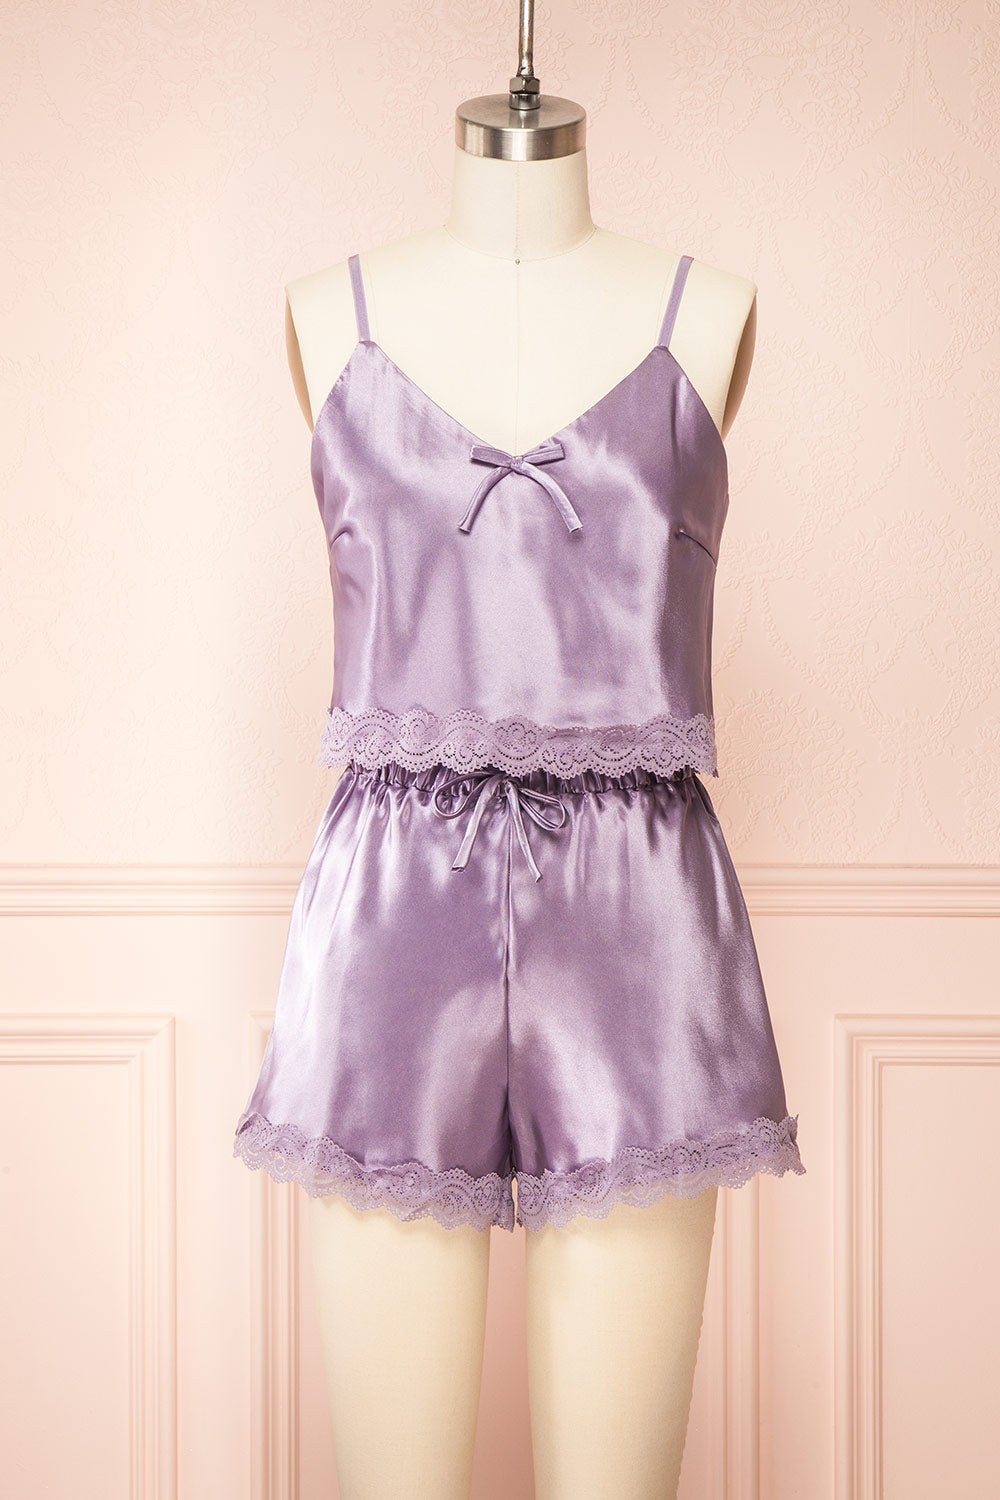 Shorts - Lavender & Lace Boutique